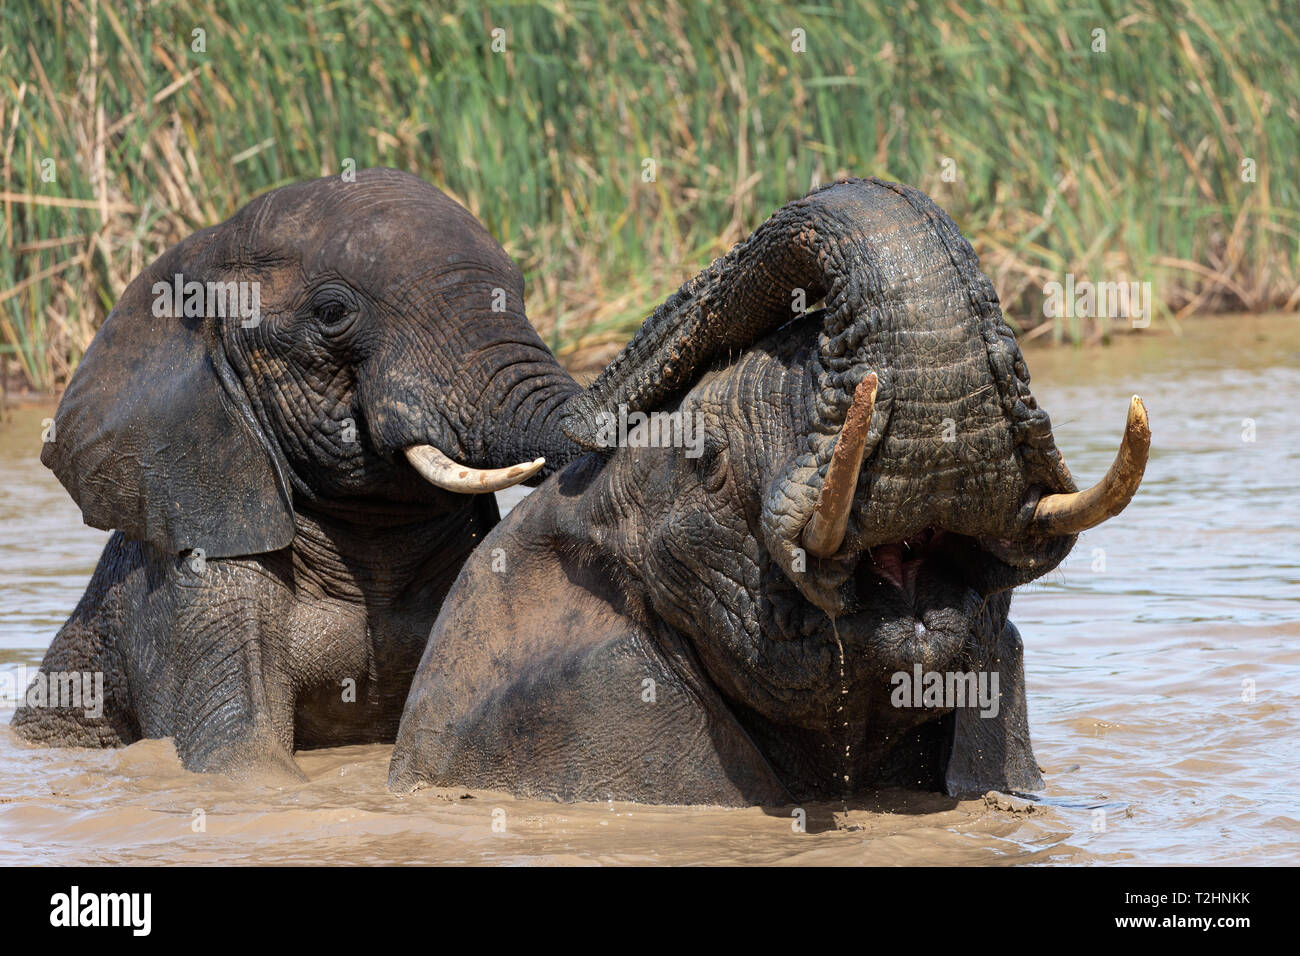 El elefante africano, Loxodonta africana, bañarse, Parque Nacional de Elefantes Addo, Eastern Cape, Sudáfrica Foto de stock